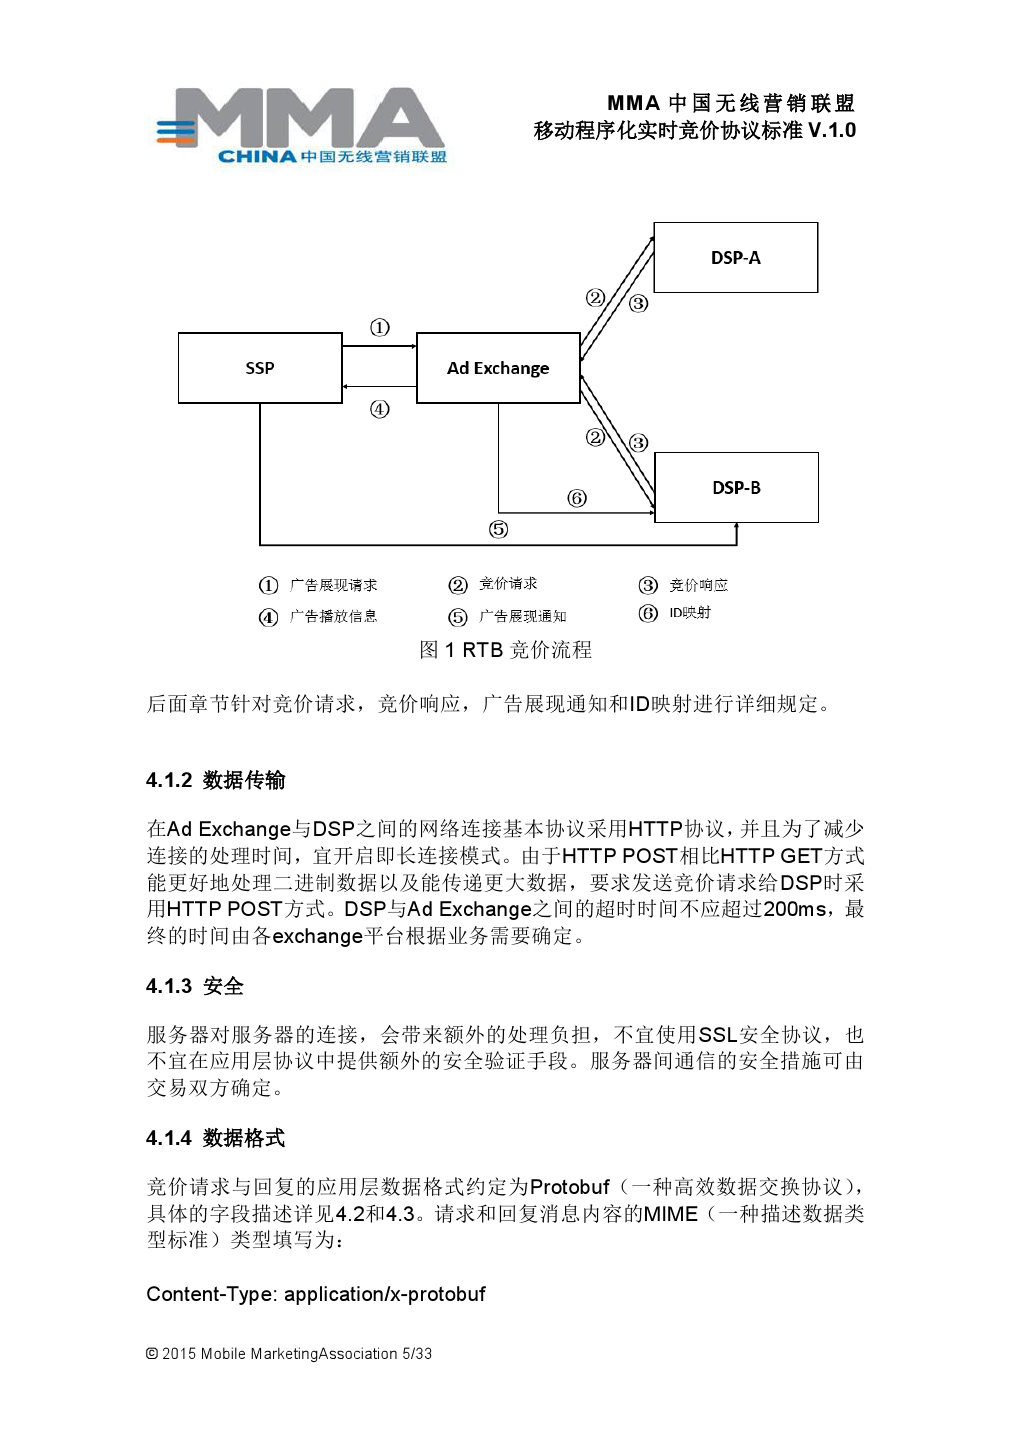 MMA中国无线营销联盟移动程序化实时竞价协议标准V.1.0_000006